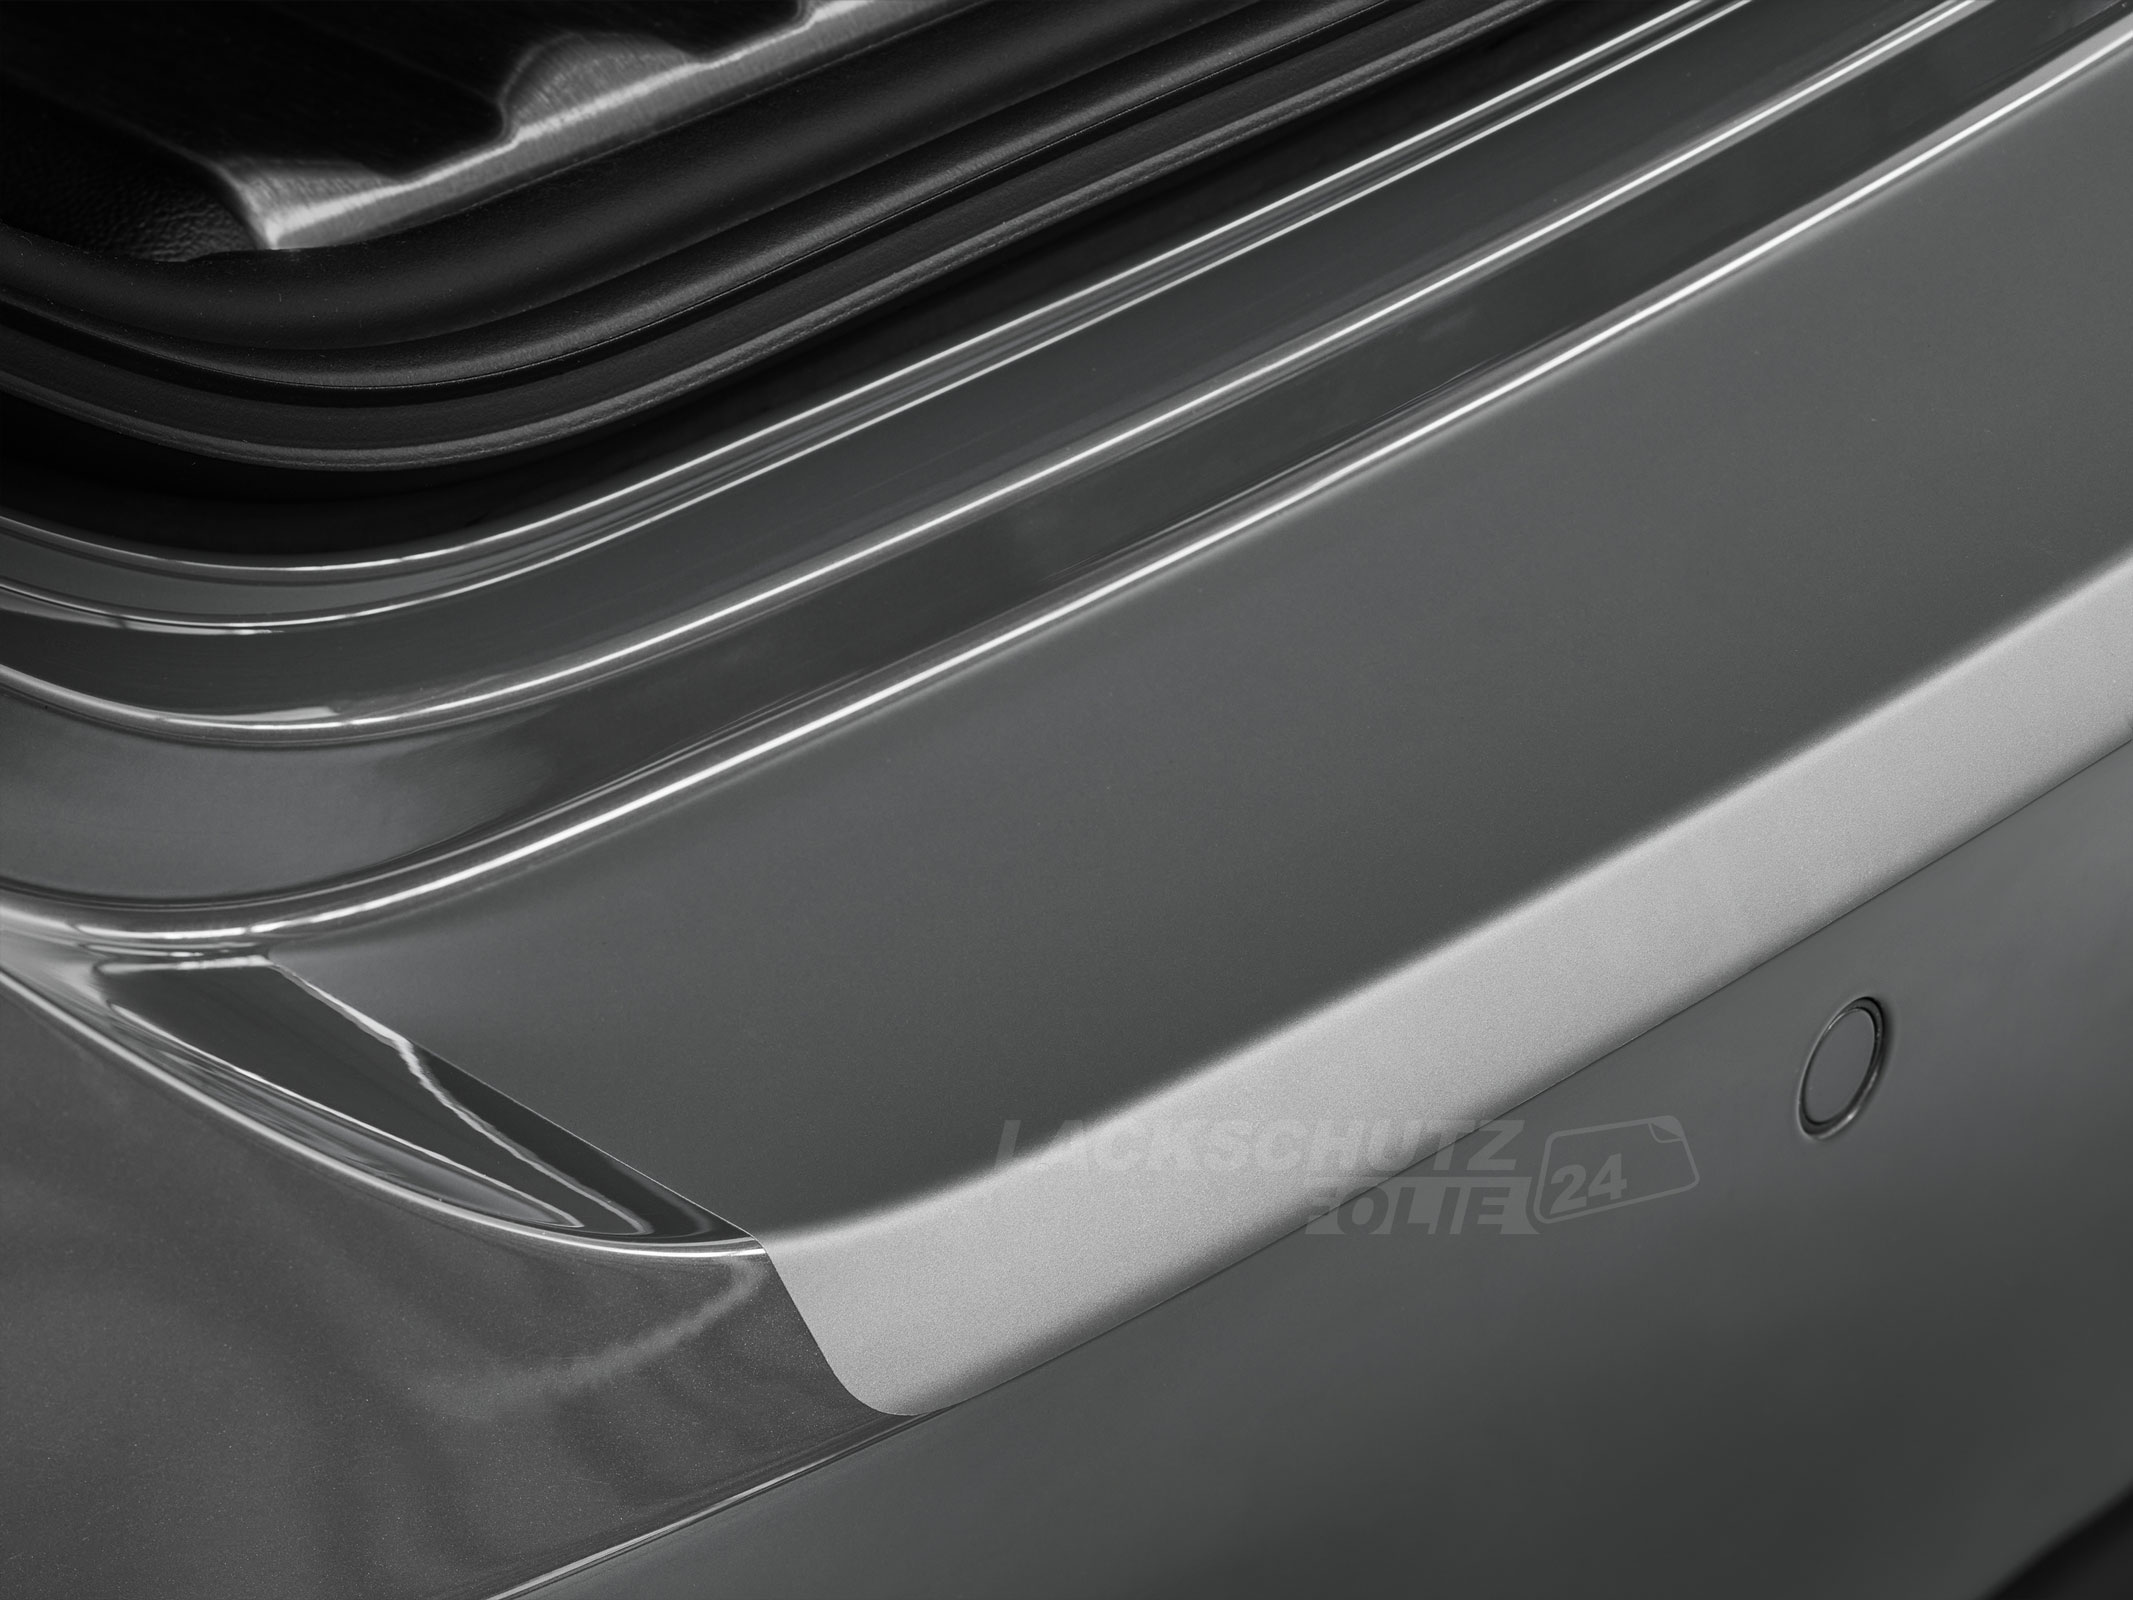 Ladekantenschutzfolie - Transparent Glatt MATT 110 µm stark  für Mitsubishi Outlander (III) Typ CWo, Facelift,  ab BJ 2015